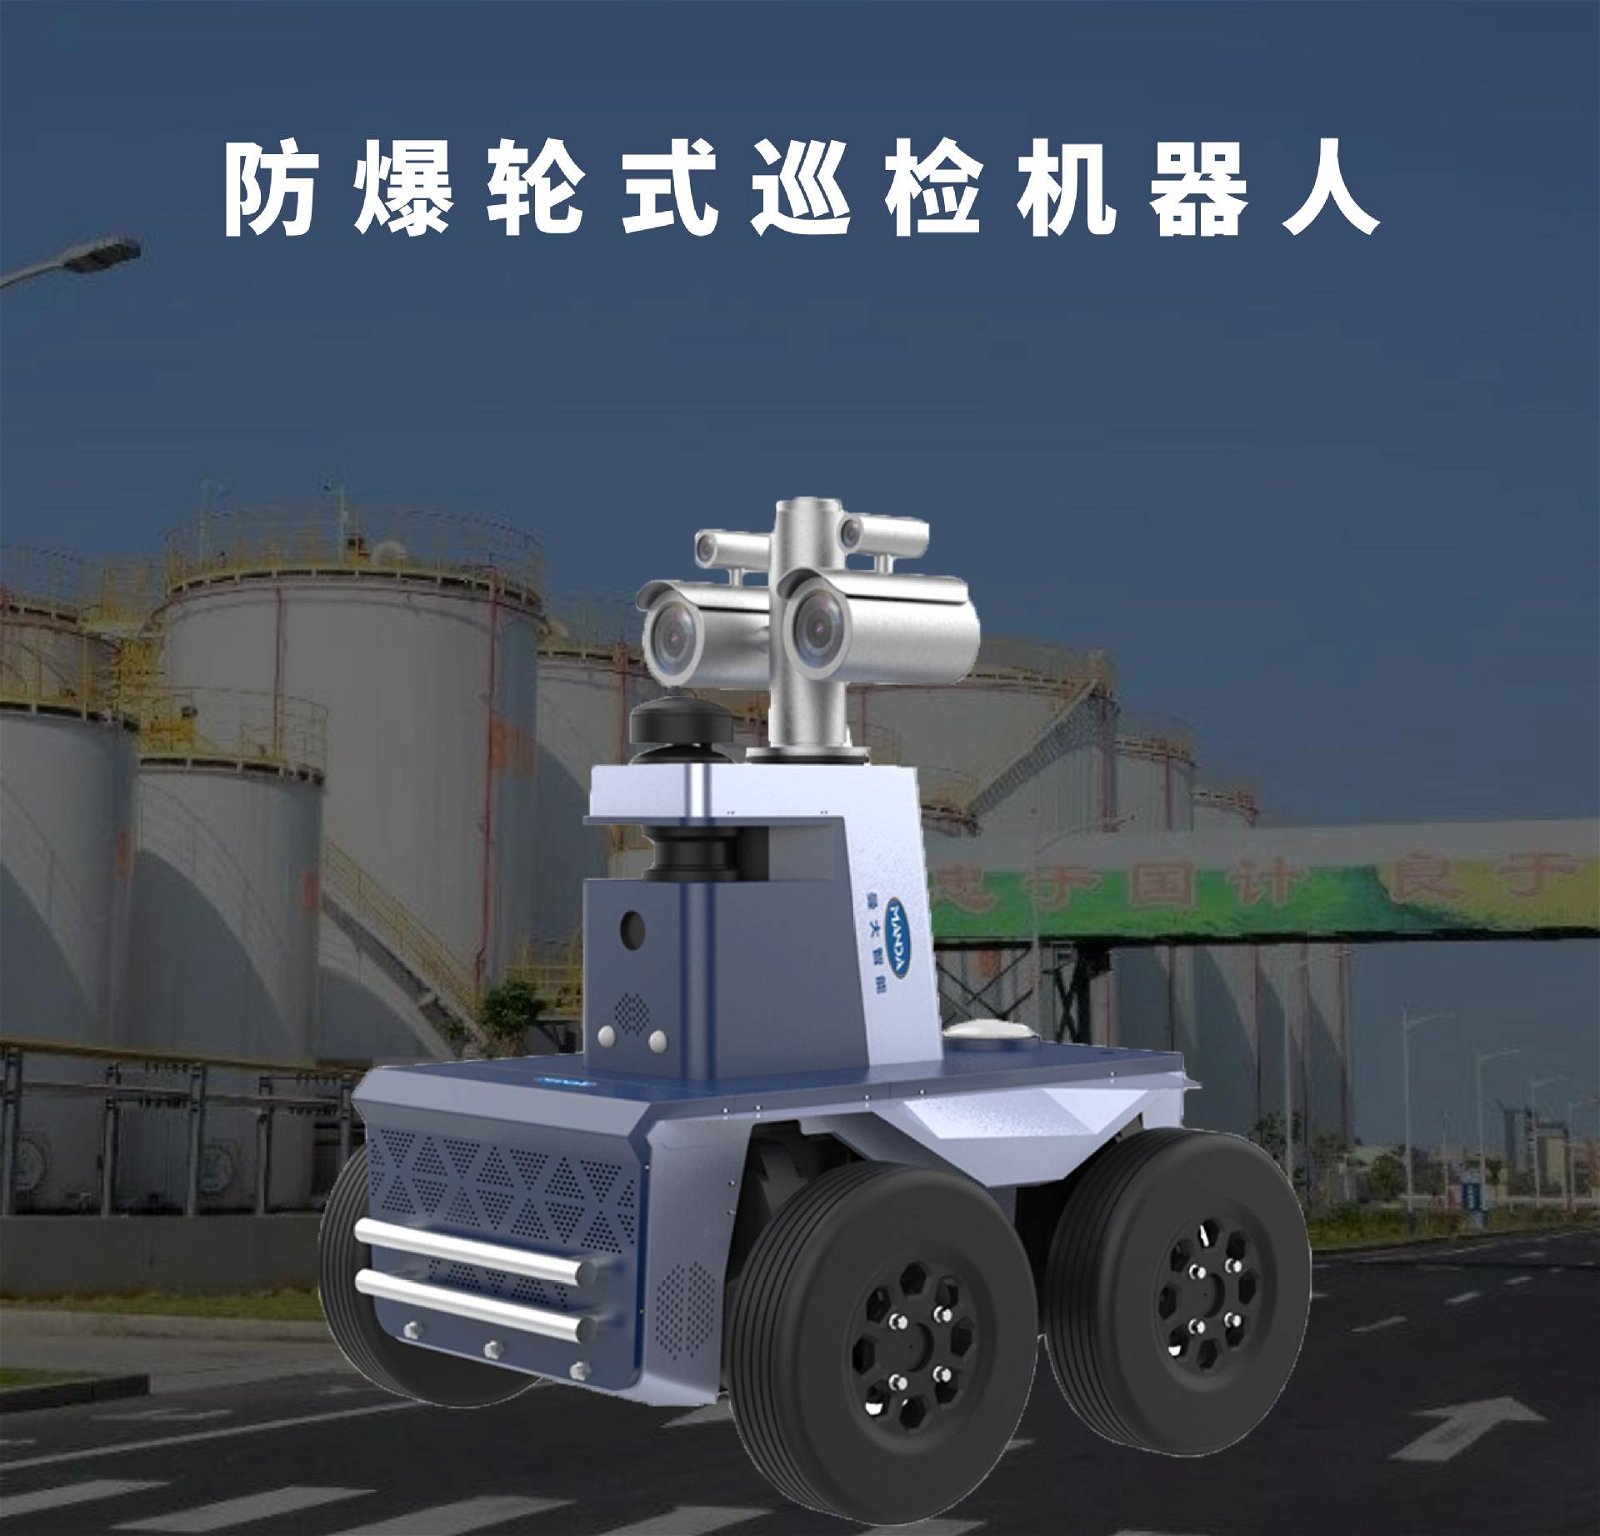 化工厂防爆轮式巡检机器人红外识别智能巡检机器人 2